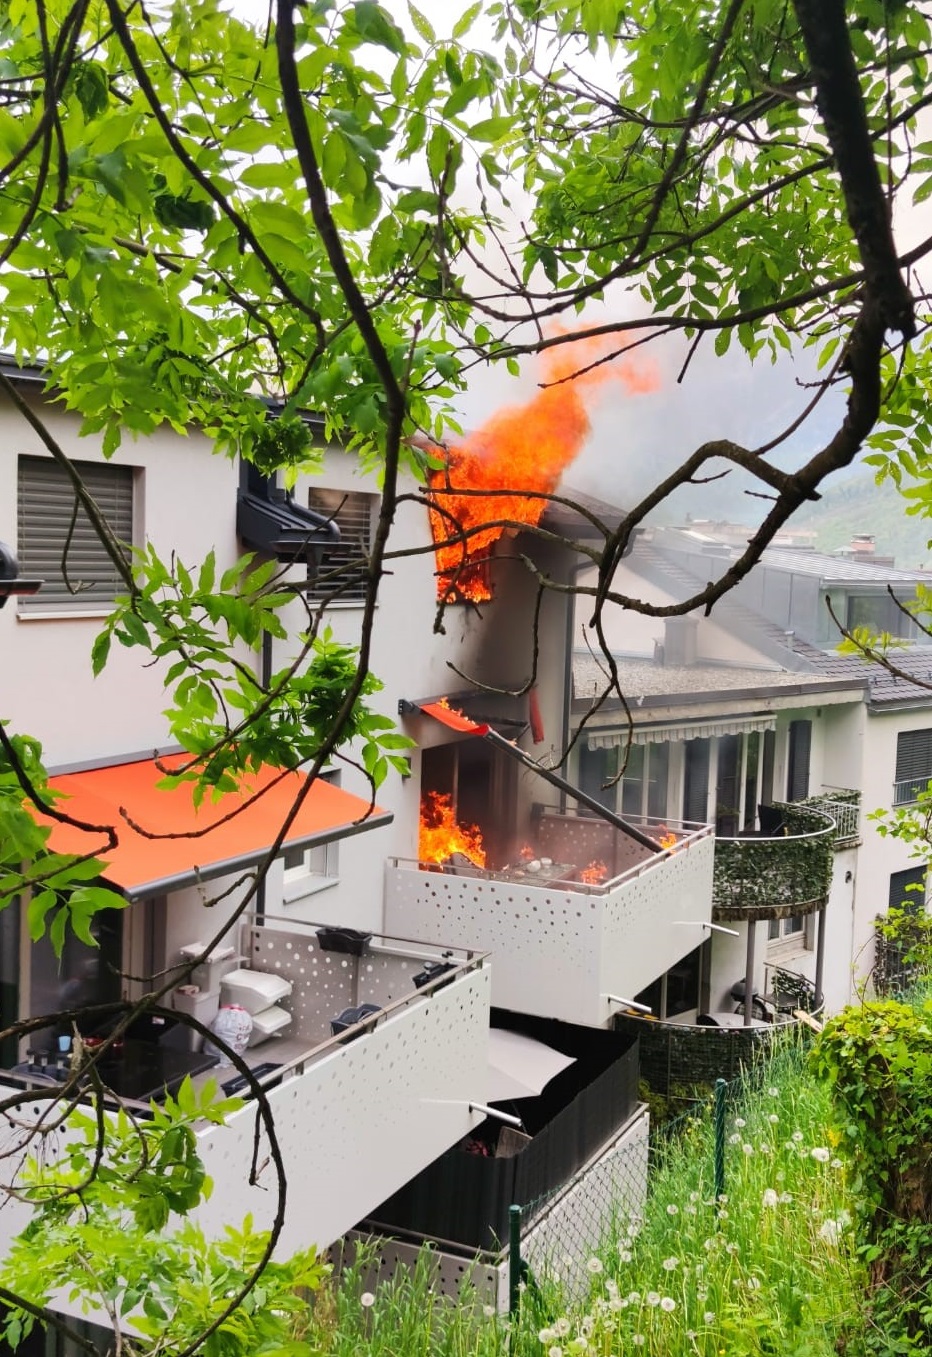 Un incendie ravage un appartement de la rue des Granges, à Monthey